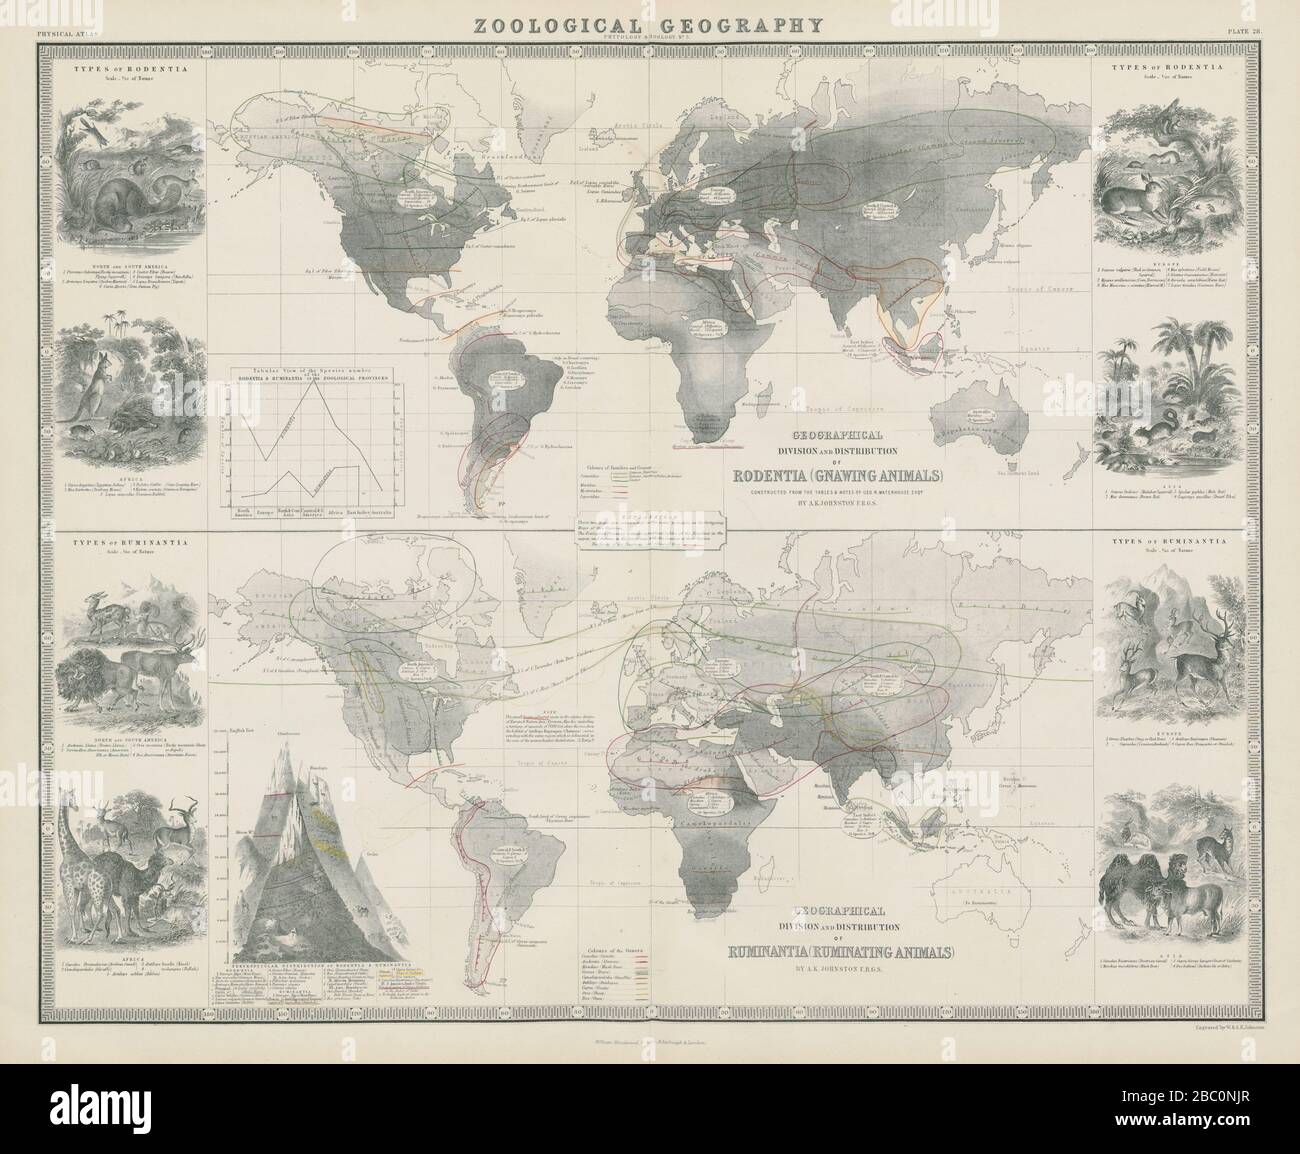 Zoologische Geographie. Rodentia & Ruminantia Distribution 1856 alte Antikkarte Stockfoto